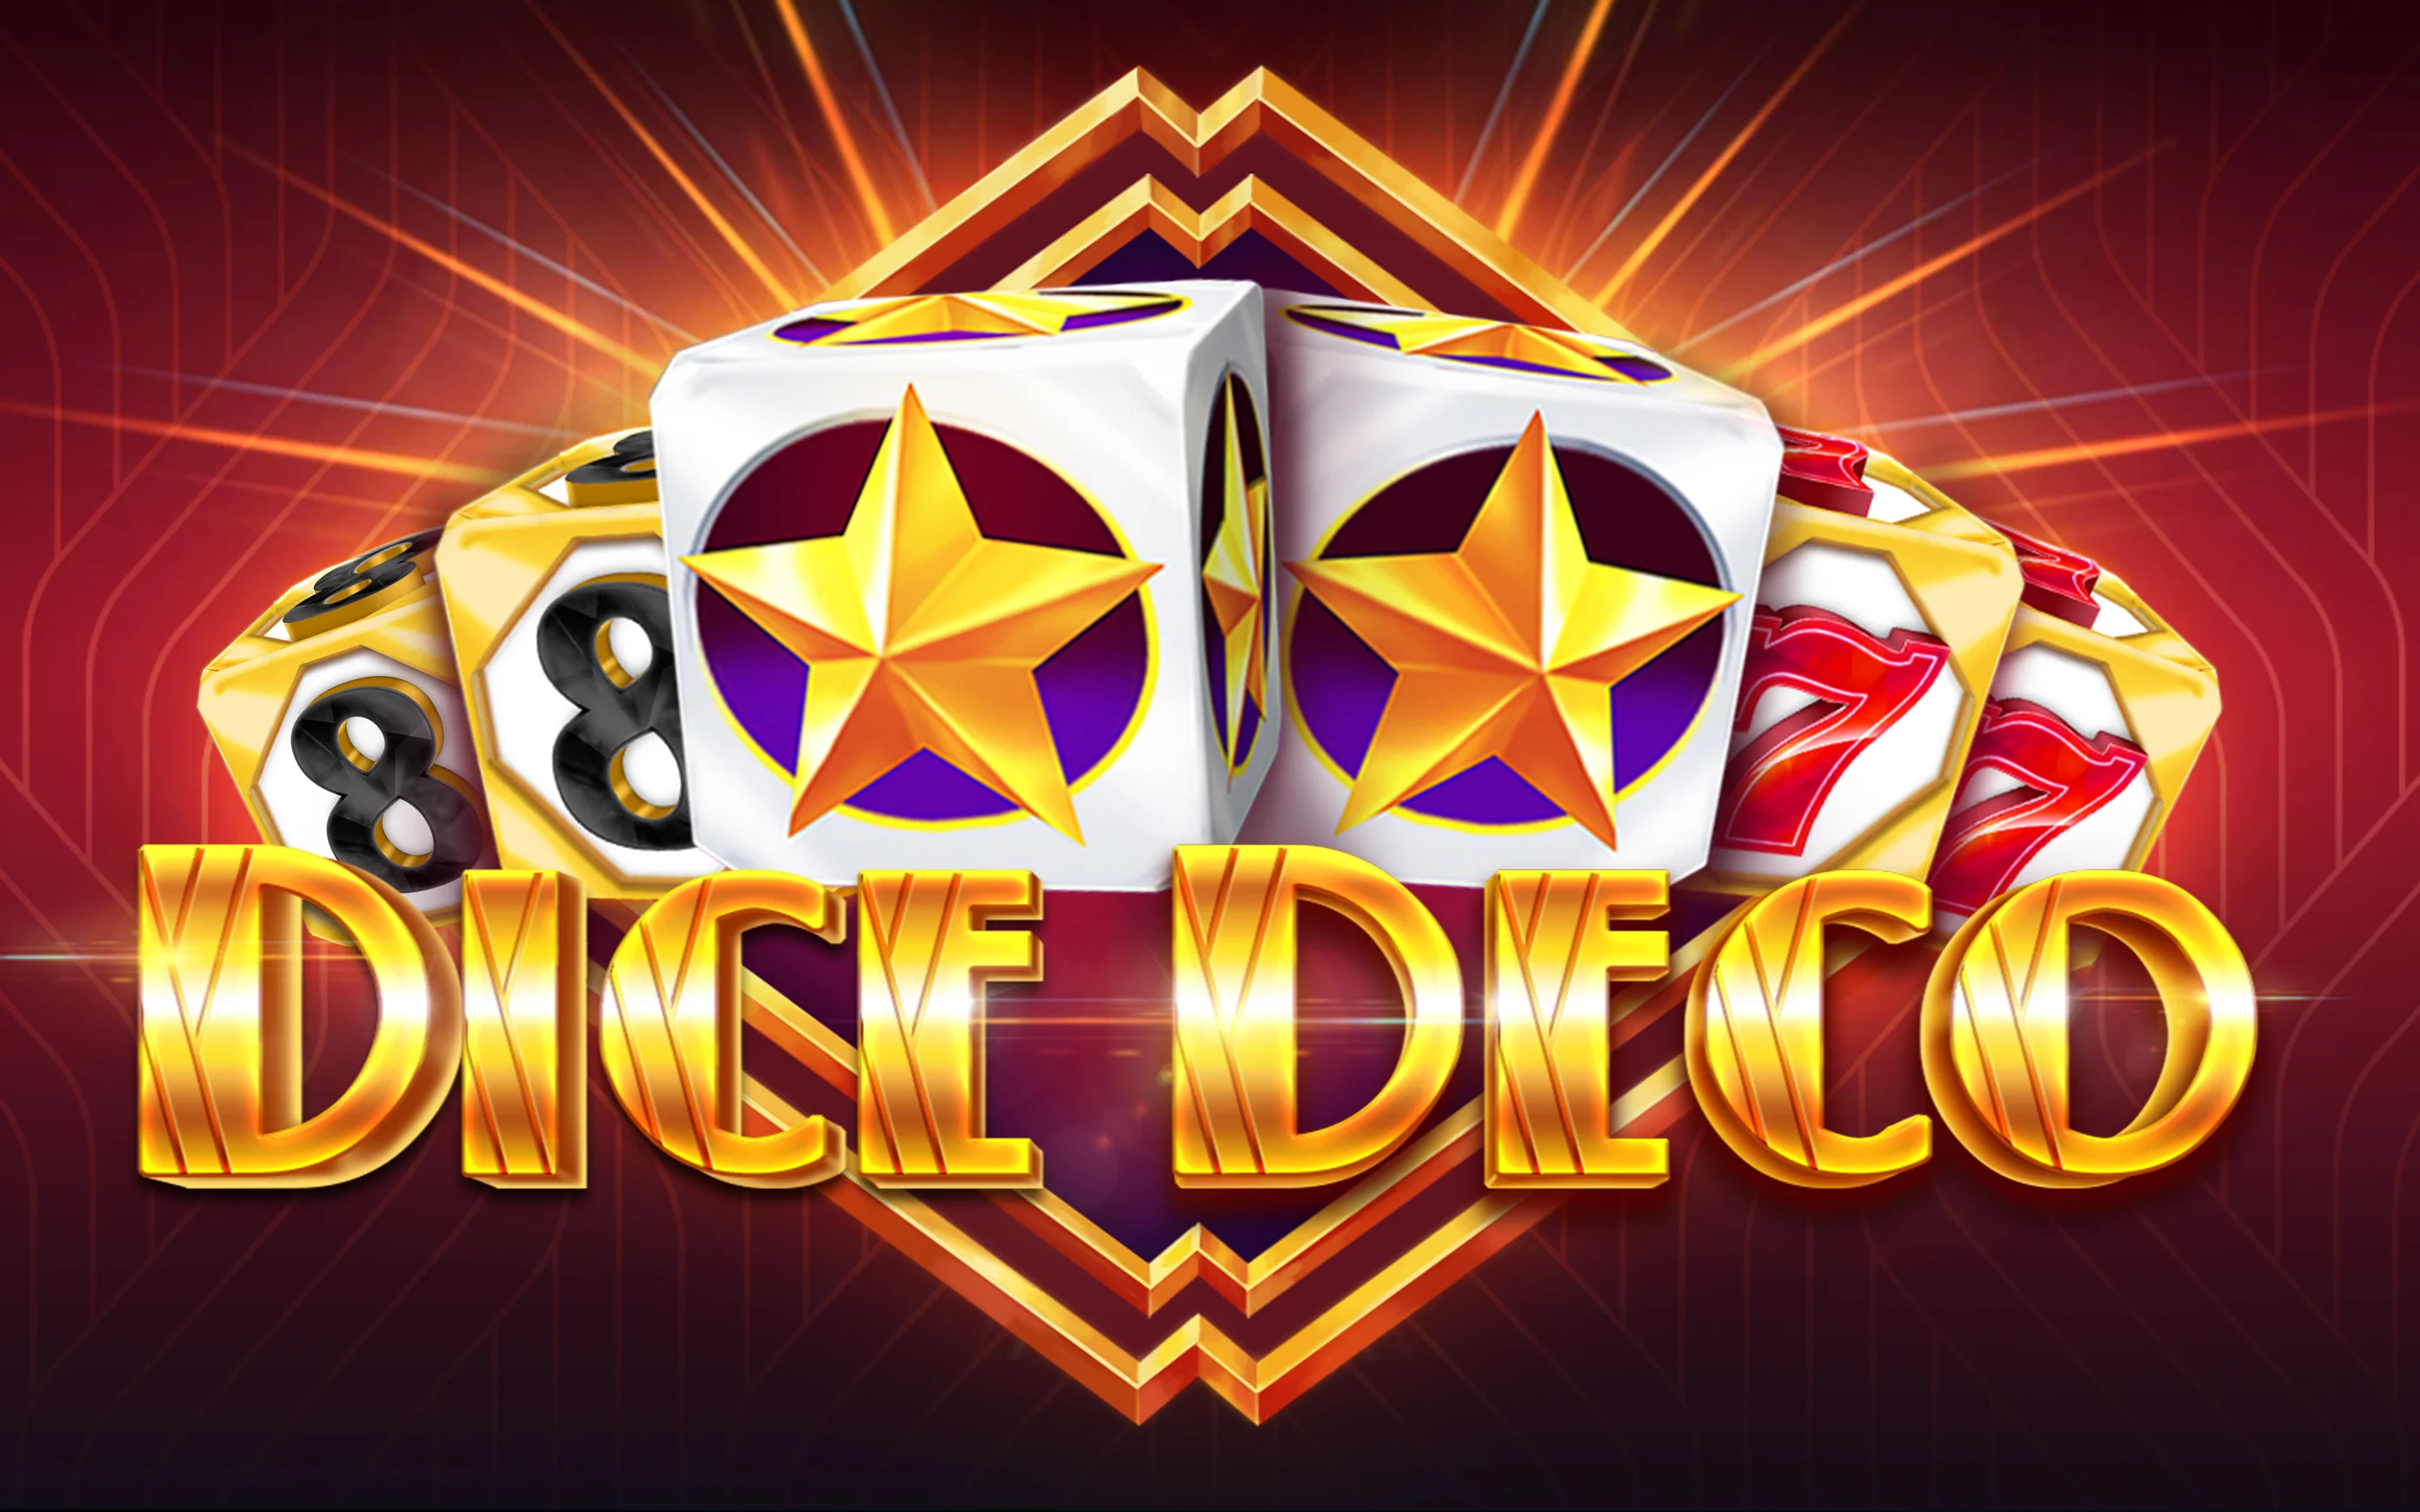 Παίξτε Dice Deco στο online καζίνο Starcasino.be